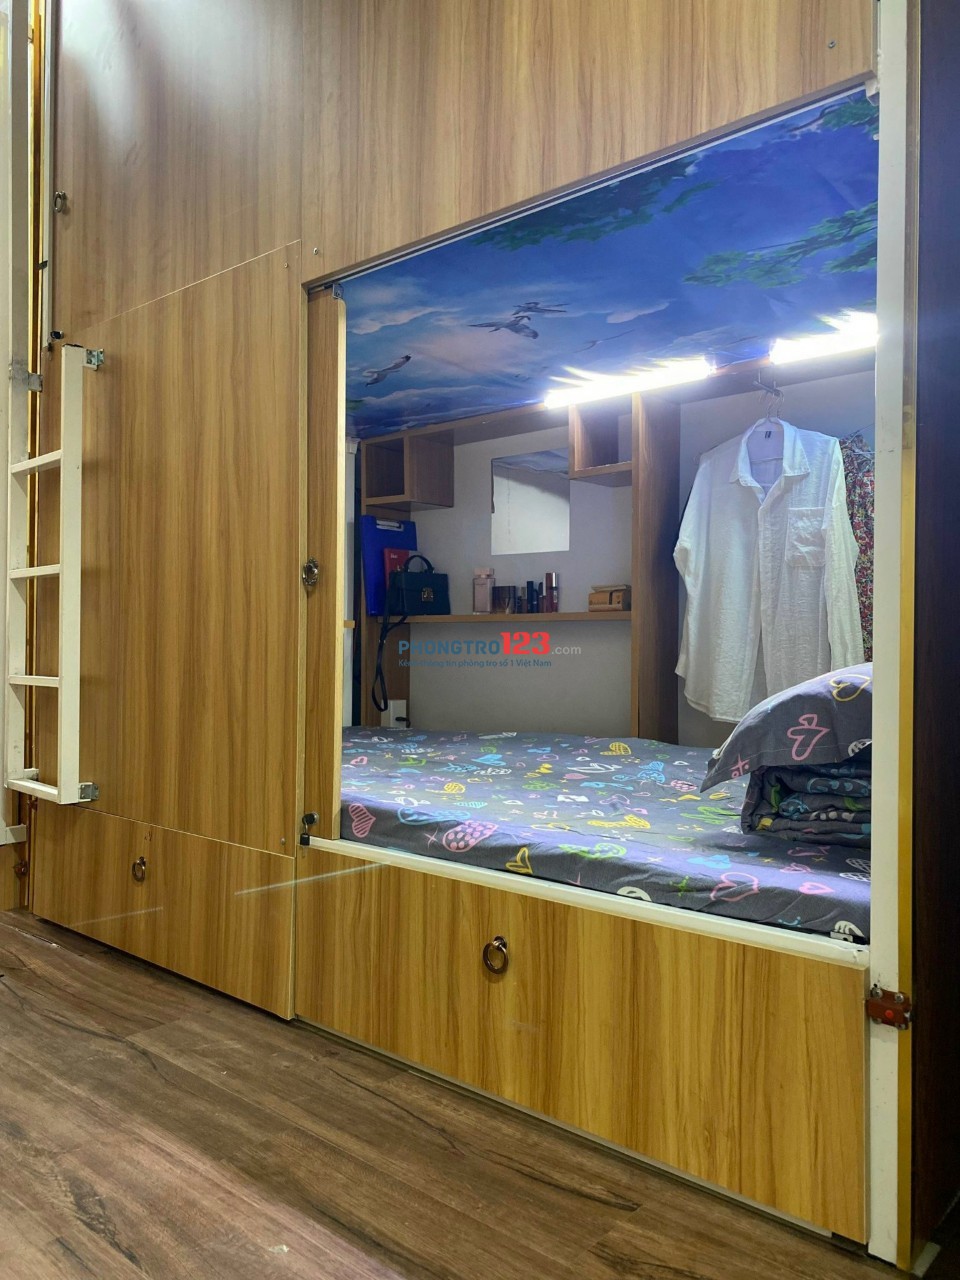 Cho thuê phòng ở ghép dạng Sleep Box 1 người ở riêng tư giá rẻ Quận Tân Bình